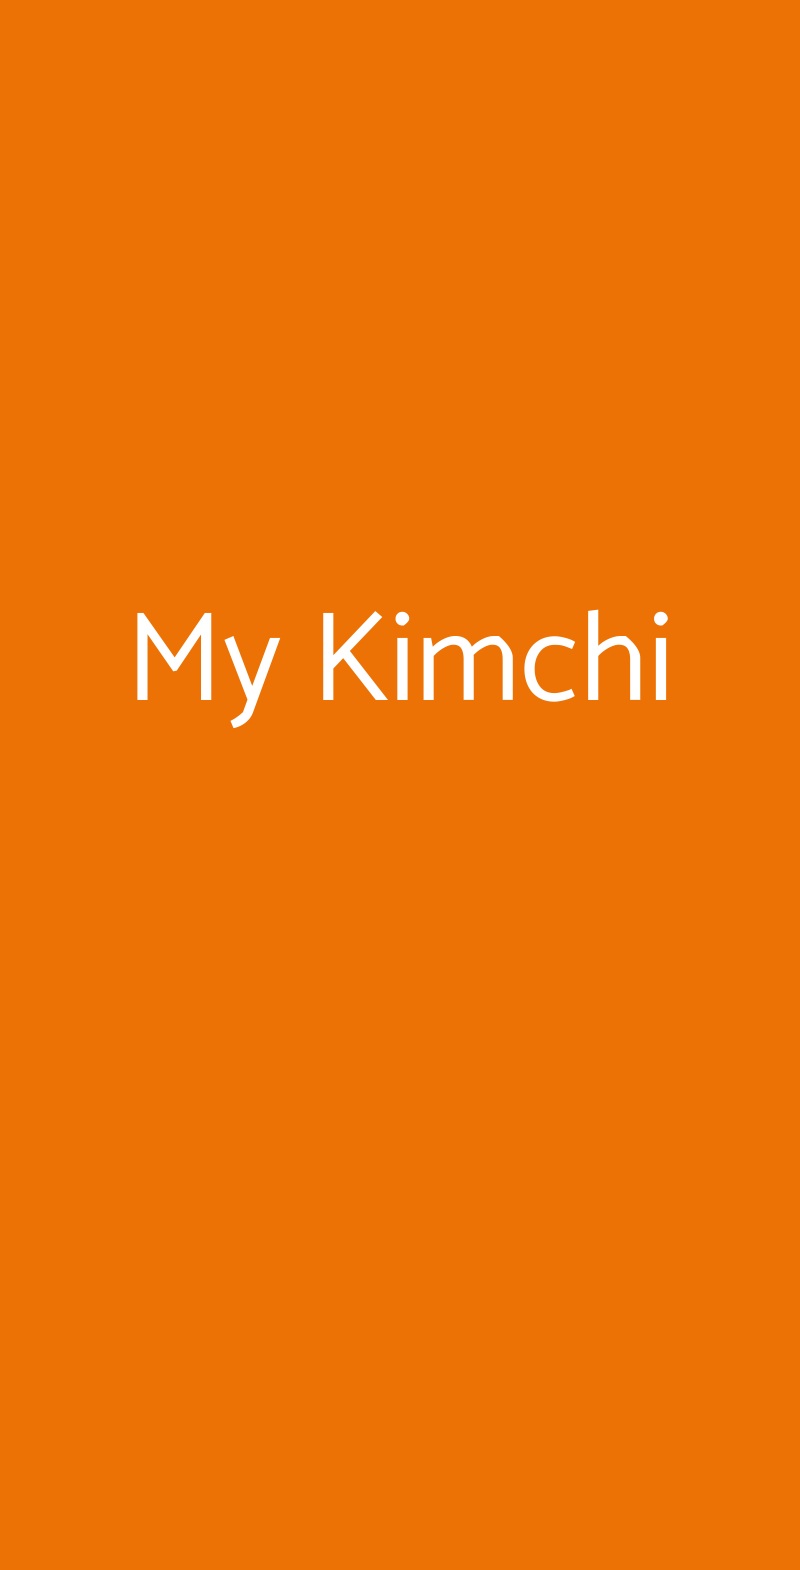 My Kimchi Milano menù 1 pagina